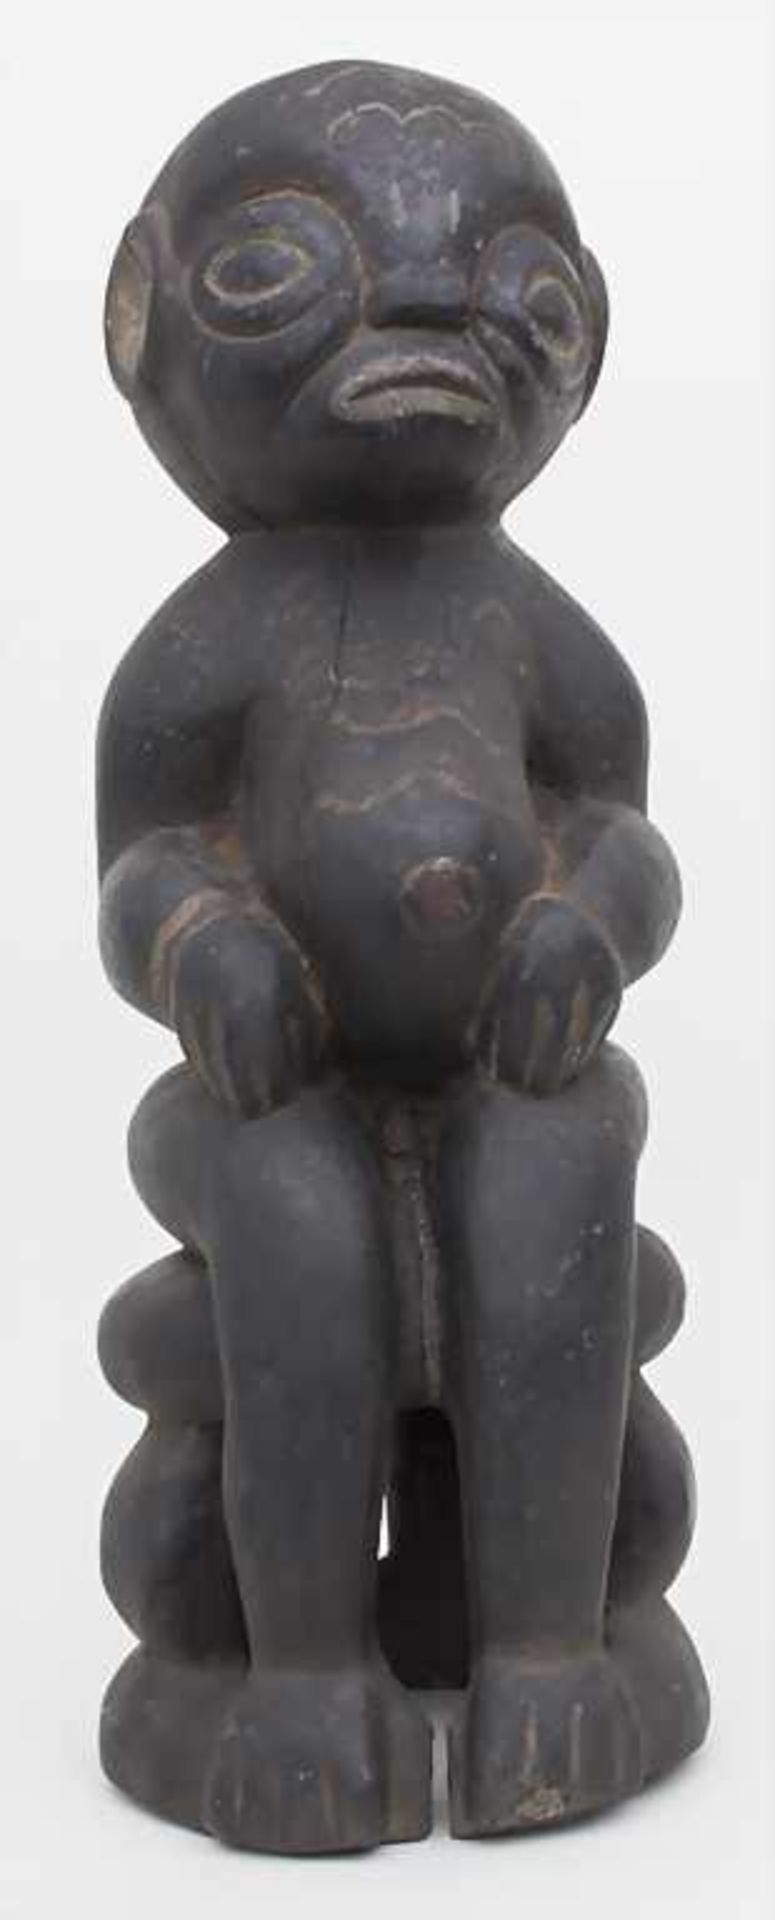 Votivfigur / A memorial figure, Kamerun, Nordwest ProvinzMaterial: schweres Holz, Gesicht und